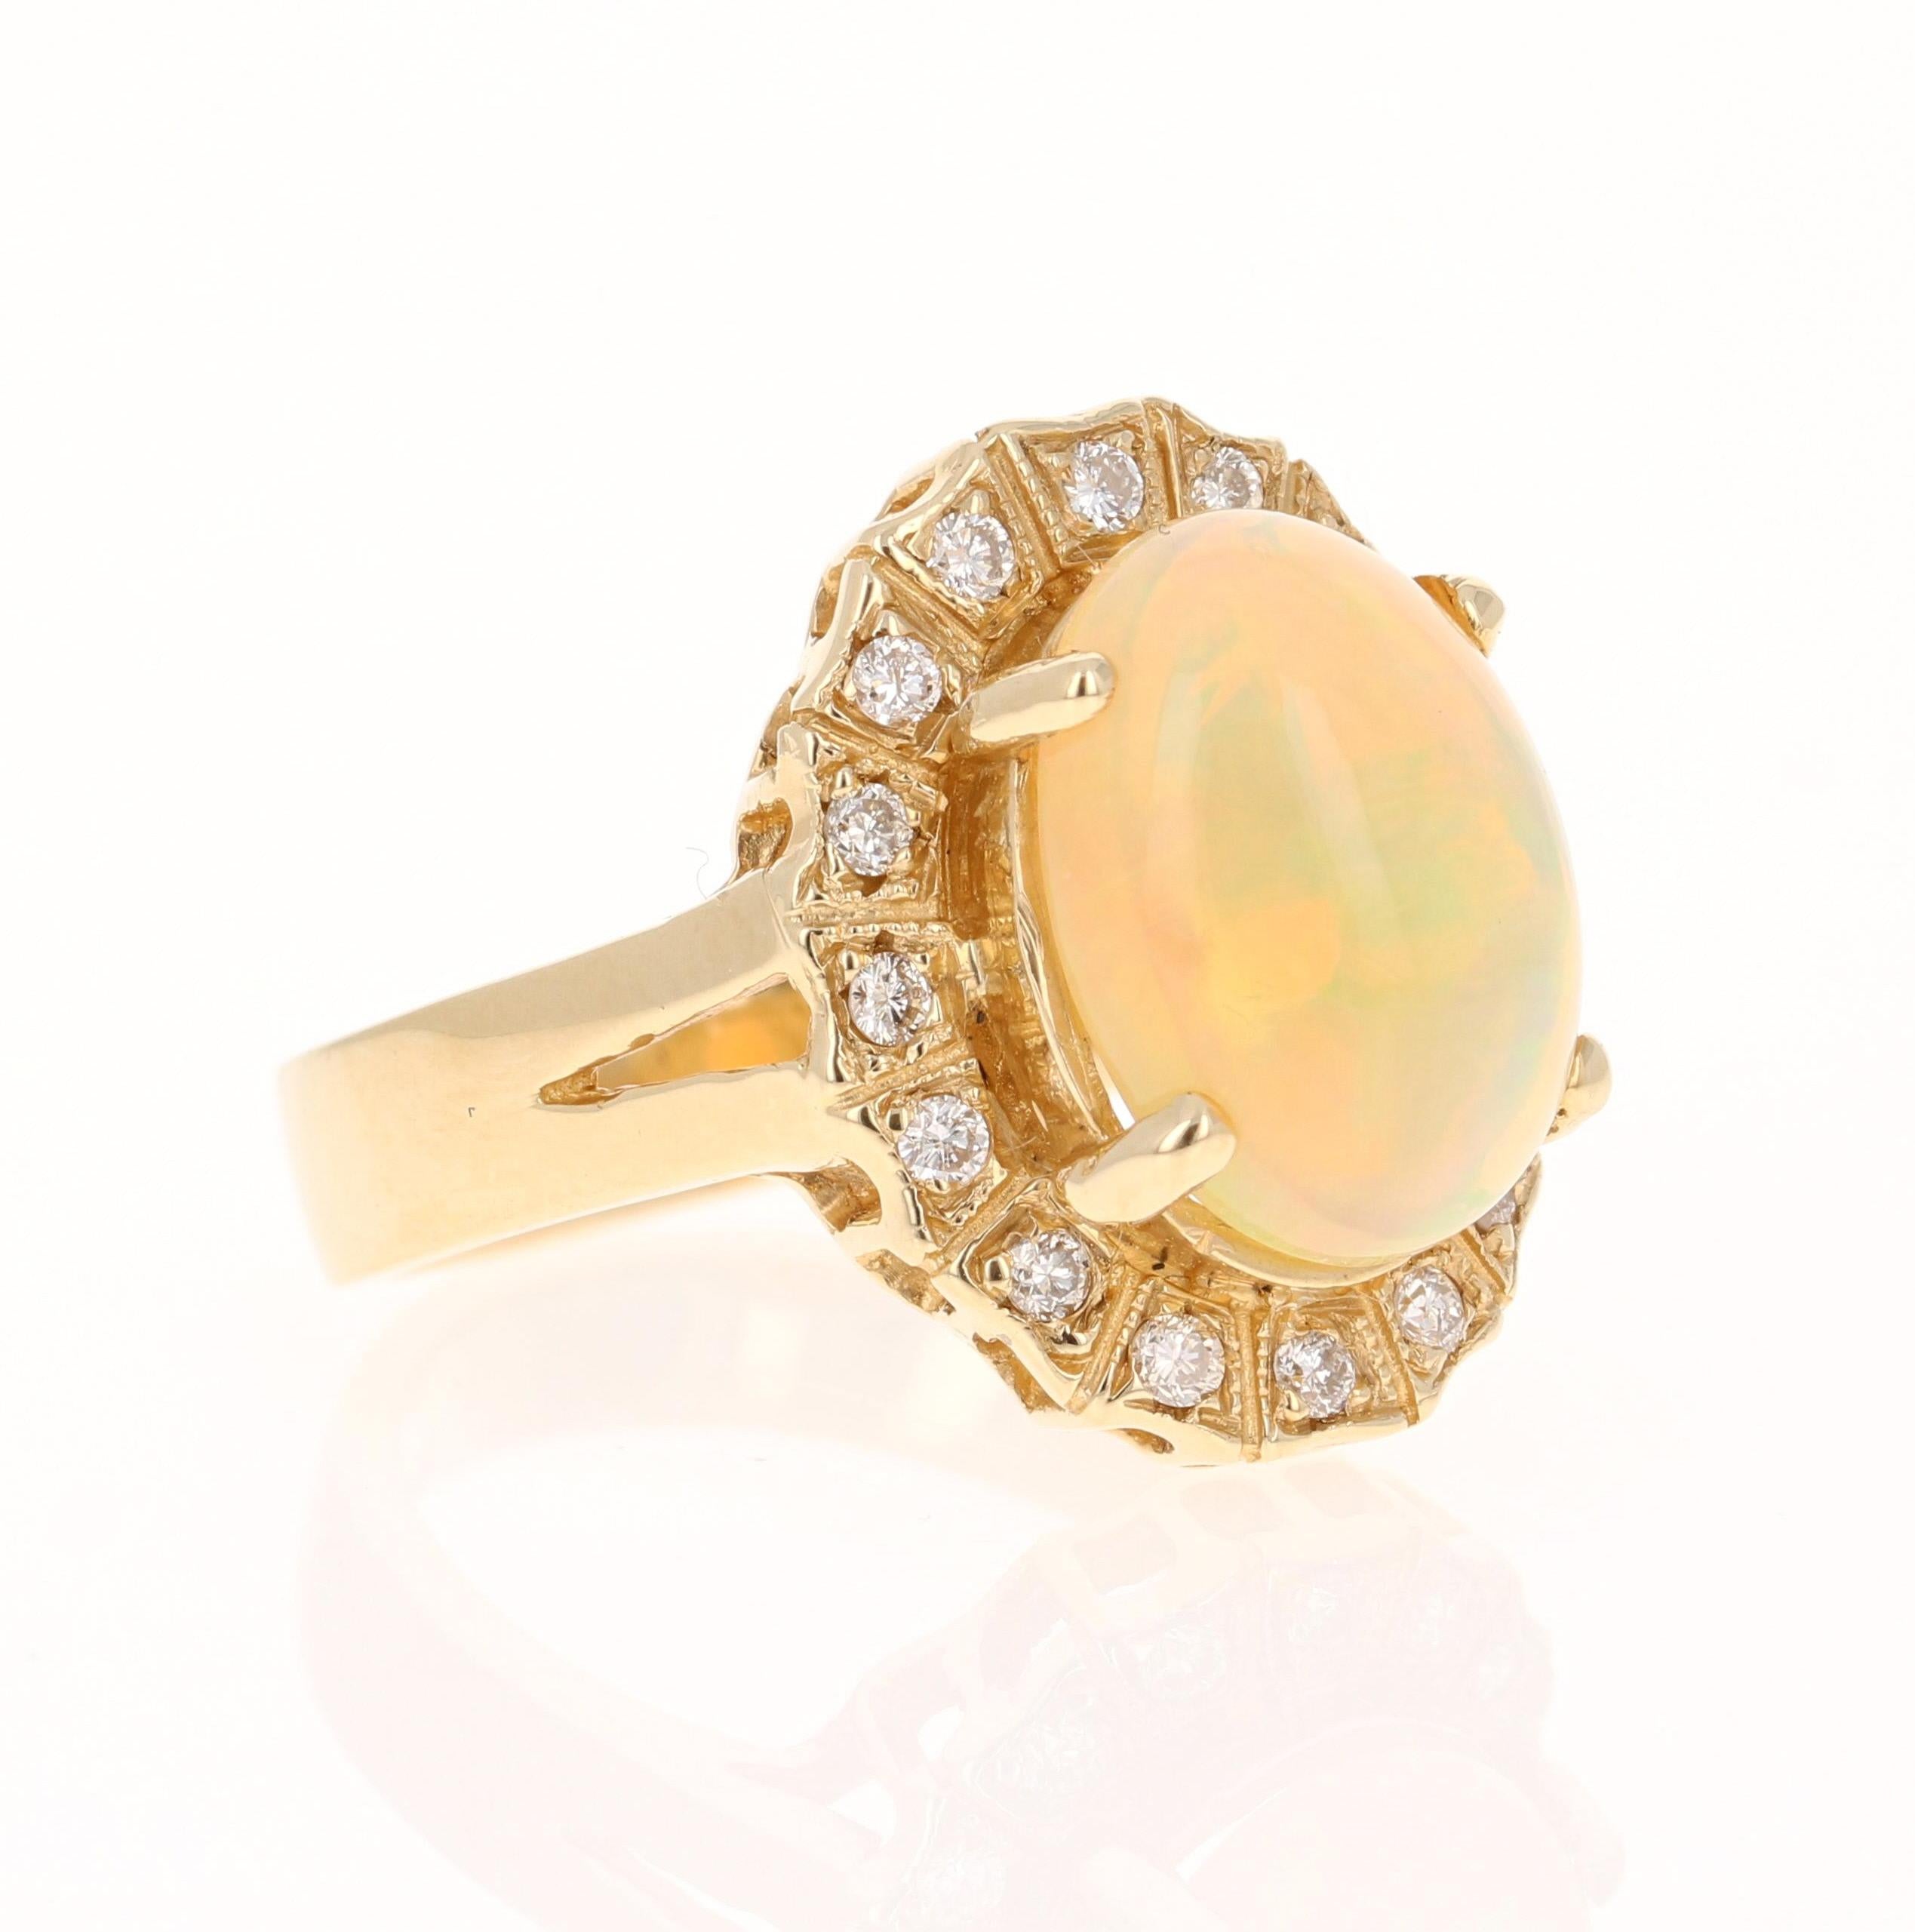 Dieser Ring hat einen Opal von 3,36 Karat, der in einer einzigartigen, viktorianisch inspirierten Fassung präsentiert wird. Die Fassung ist mit 16 Diamanten im Rundschliff mit einem Gewicht von 0,27 Karat verziert. Das Gesamtkaratgewicht des Rings